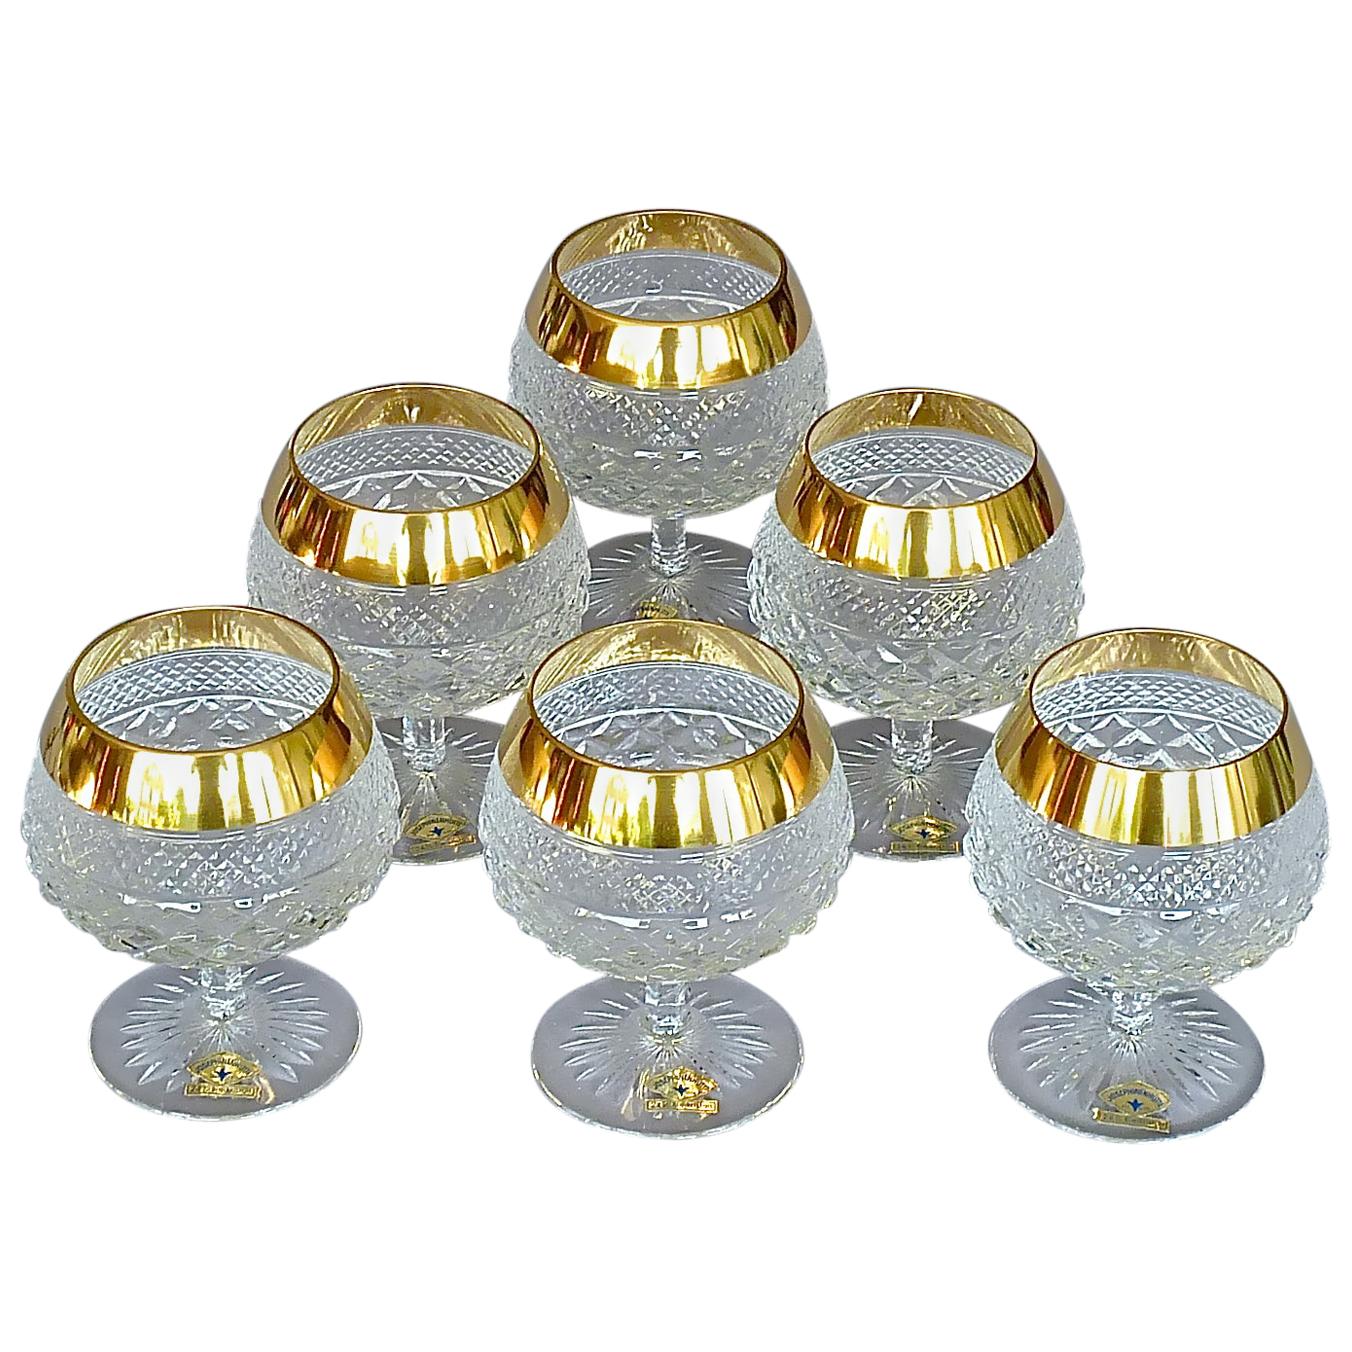 Precious 6 Cognac Glasses Gold Crystal Glass Stemware Josephinenhuette Moser